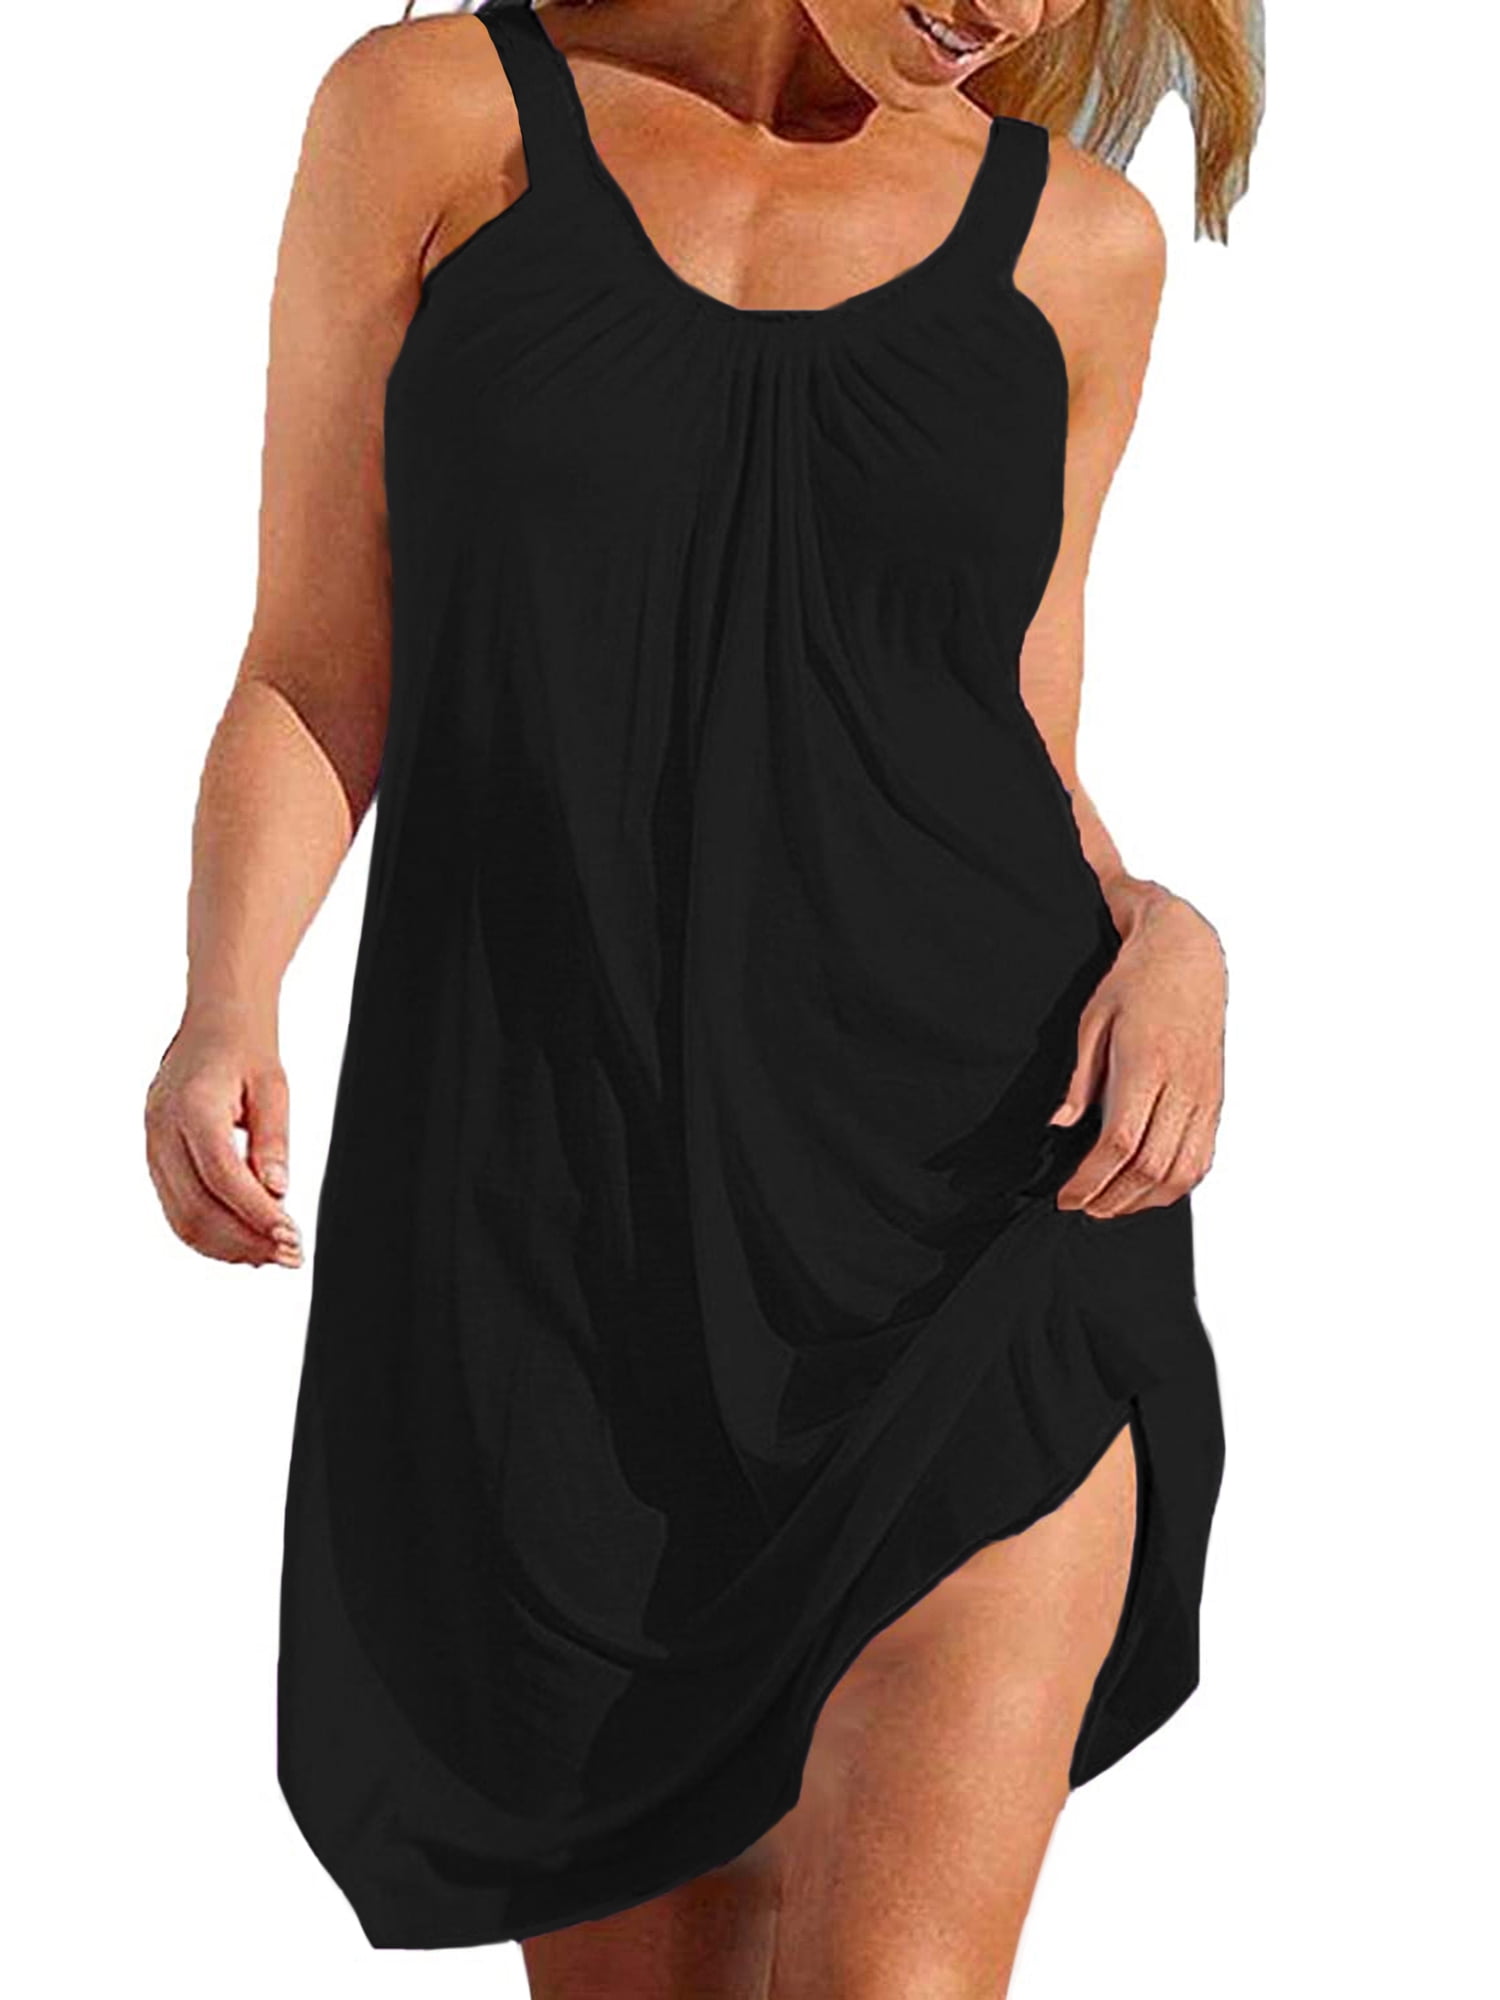 UVN Summer Swimsuit Cover Up for Women Swimwear Black Halter Dress ...